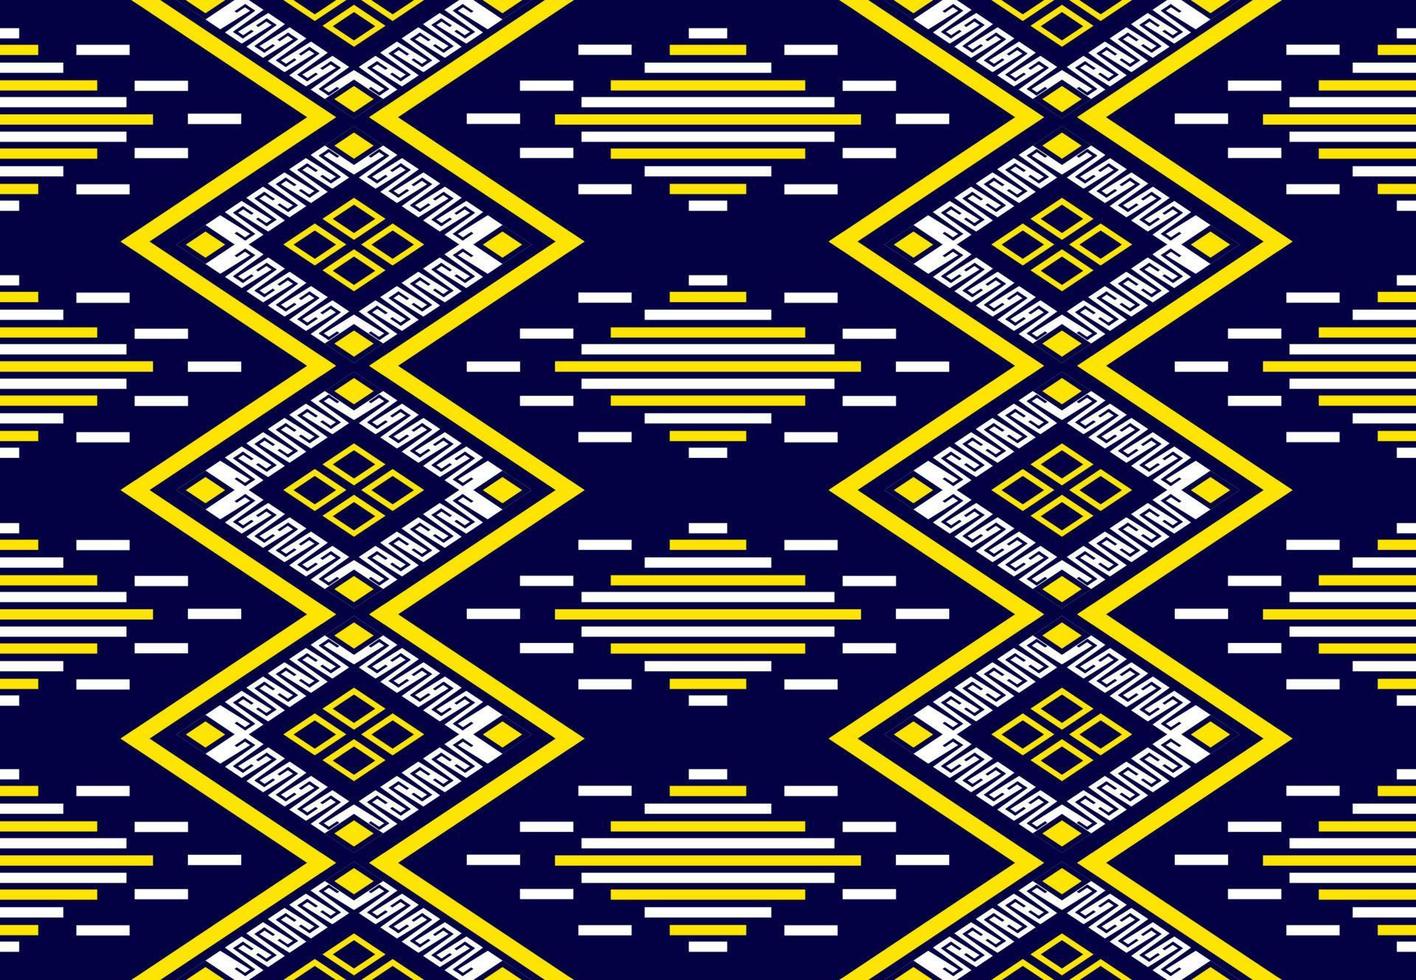 gemetriska etniska orientaliska sömlösa mönster traditionell design för bakgrund, matta, tapeter, kläder, inslagning, batik, tyg, vektor illustraion.broderi stil.